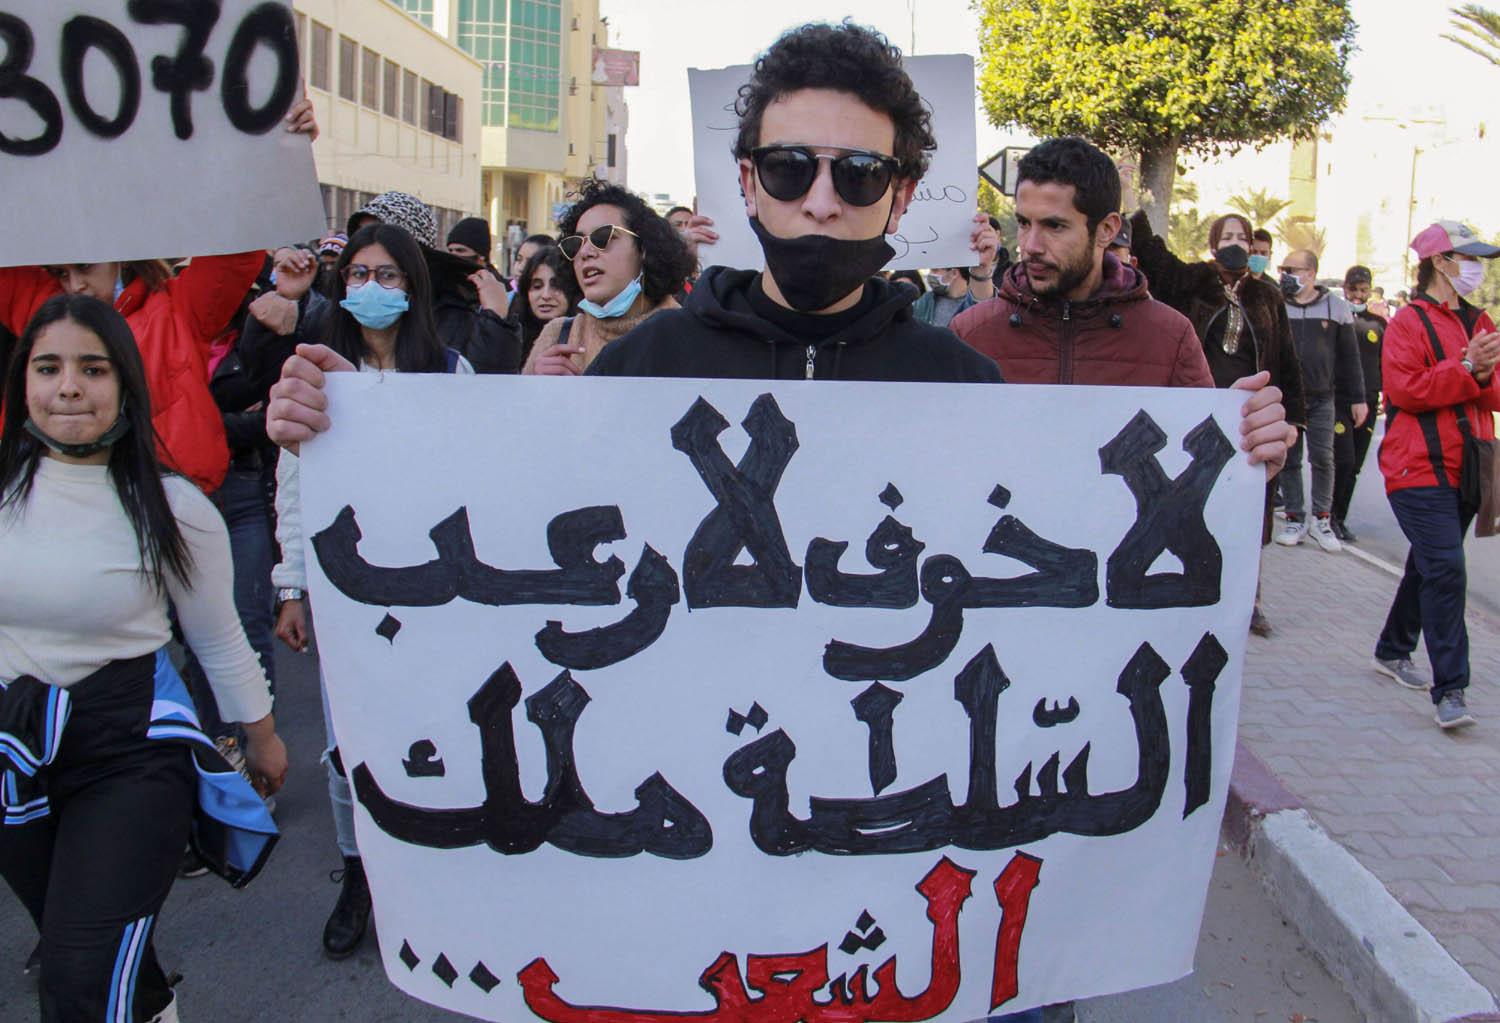 تونسيون يتظاهرون وسط العاصمة احتجاجا على الطبقة الحاكمة والوضع الاقتصادي